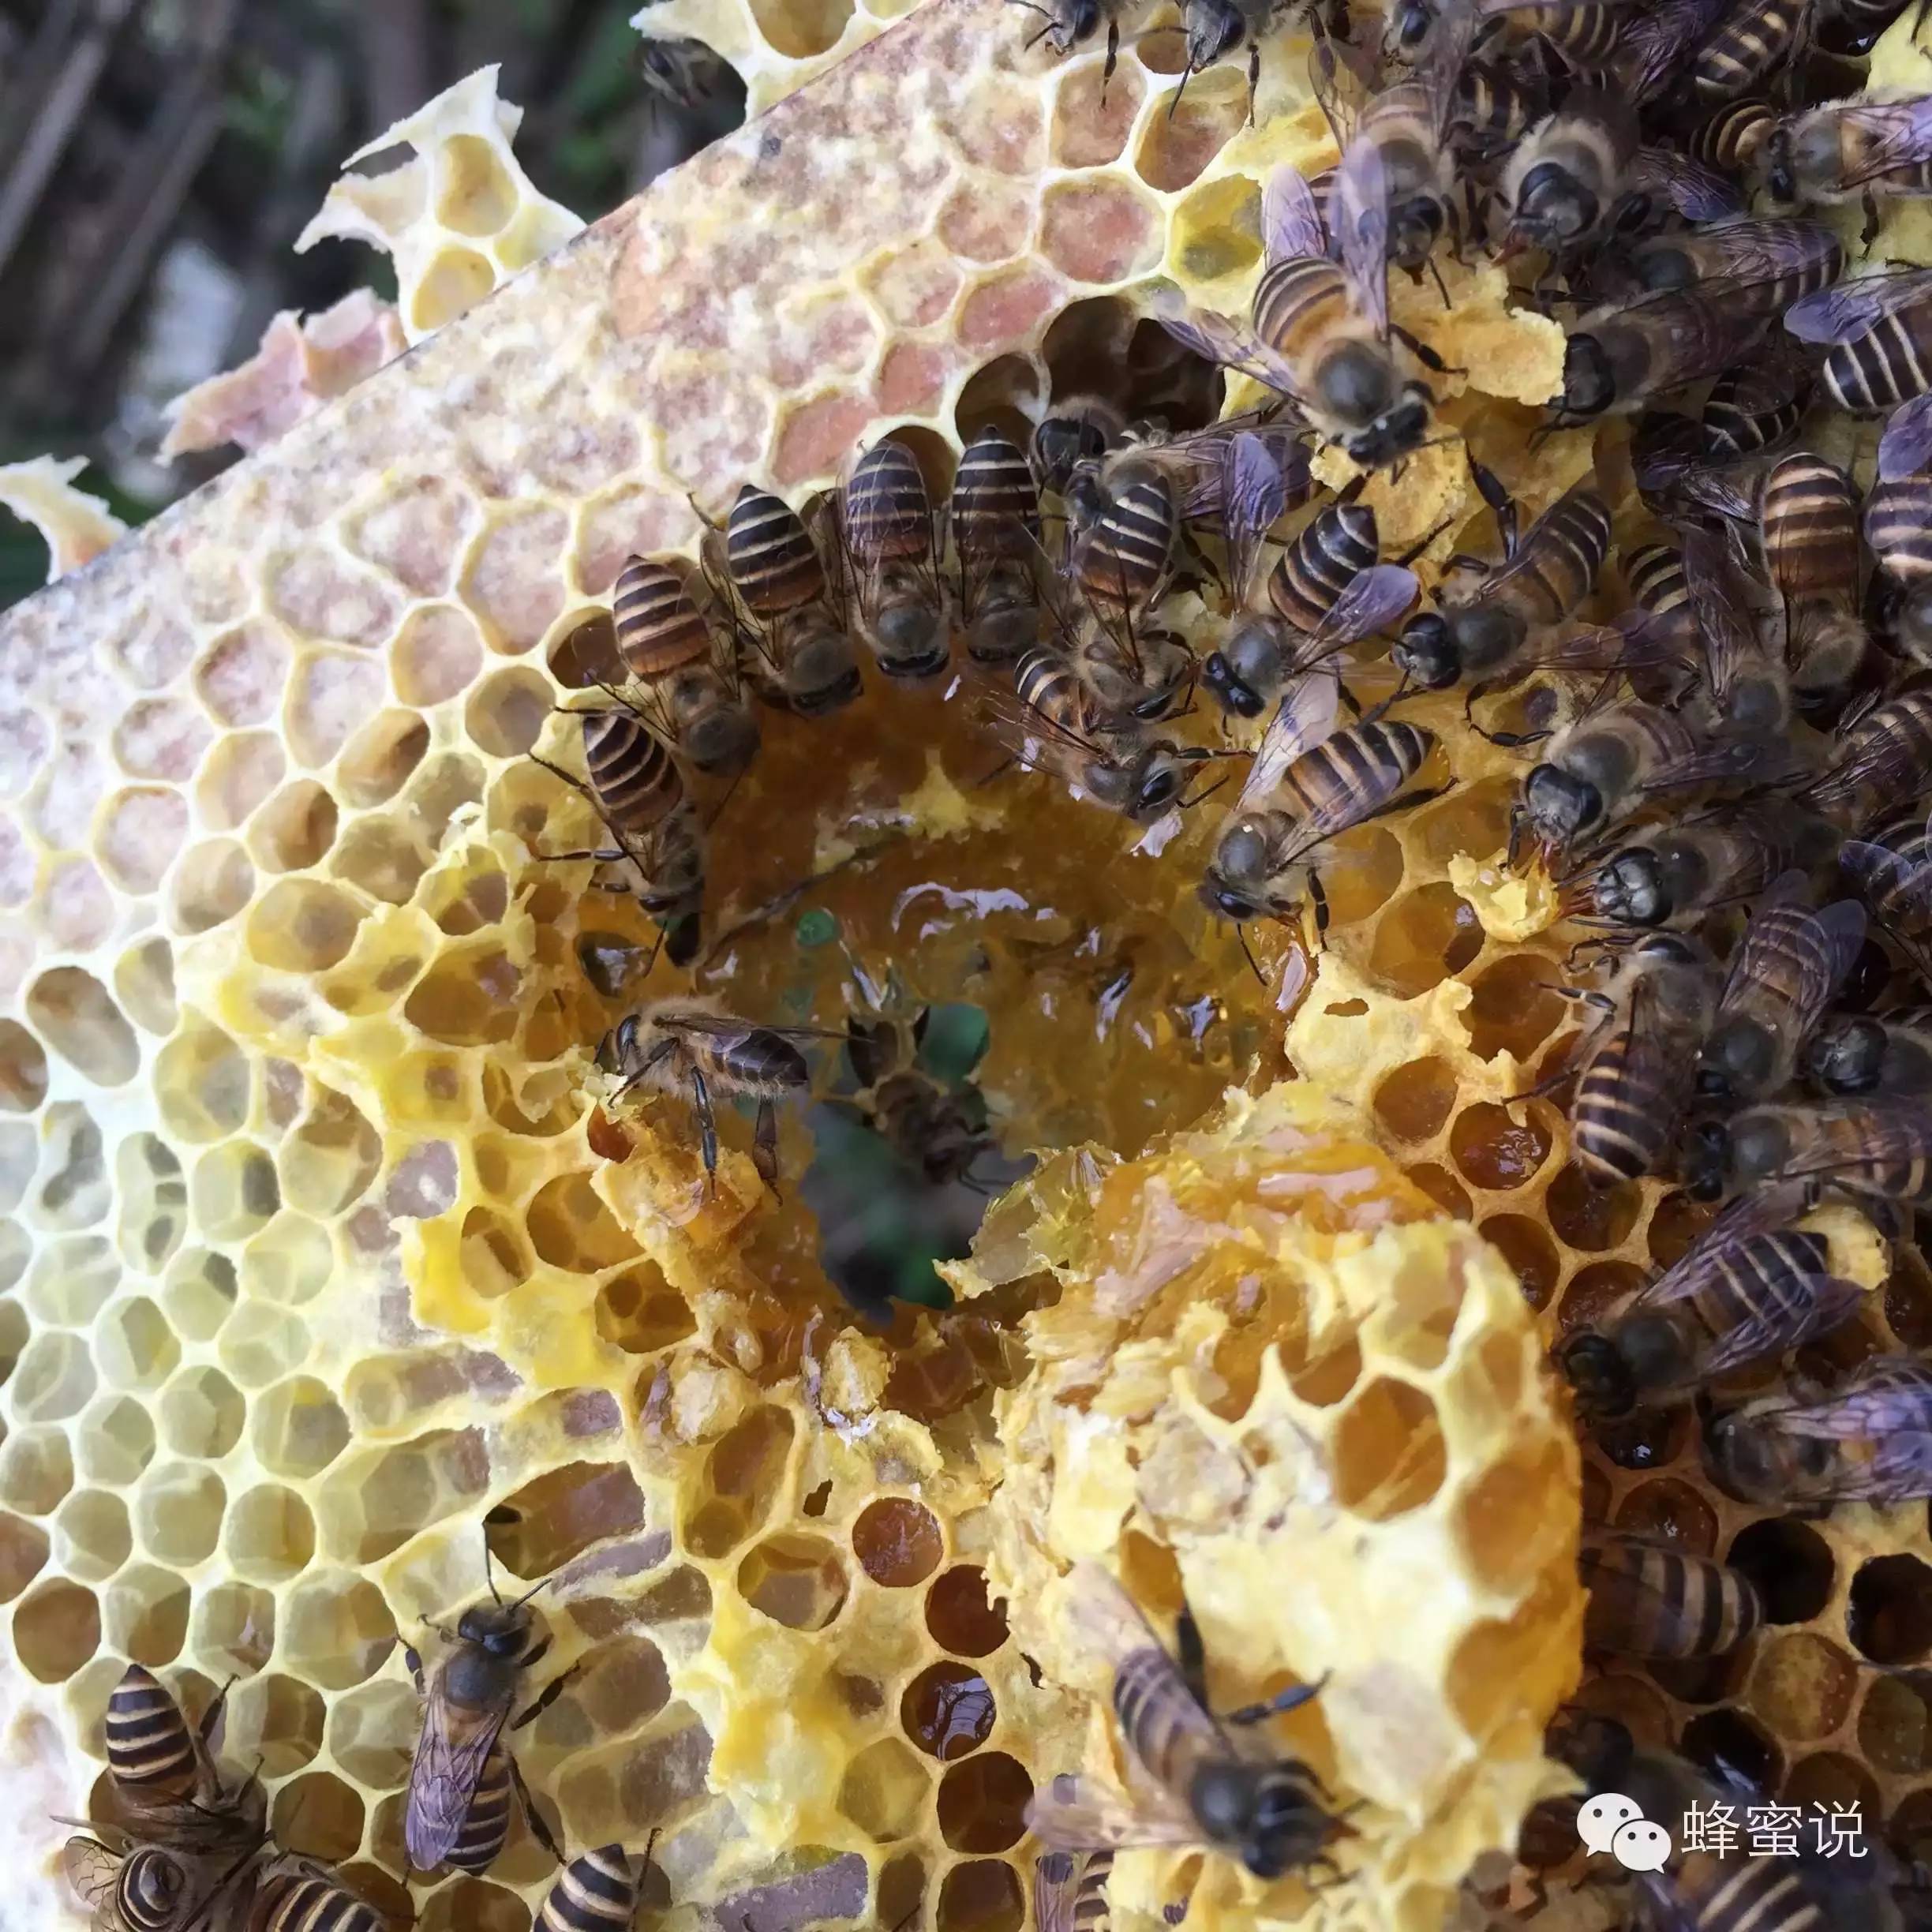 土蜂蜜 纯天然 蜂蜜 纯天然 农家 纯野生蜂蜜 蜂蜜姜汁水的作用 用蜂蜜自制去皱眼霜